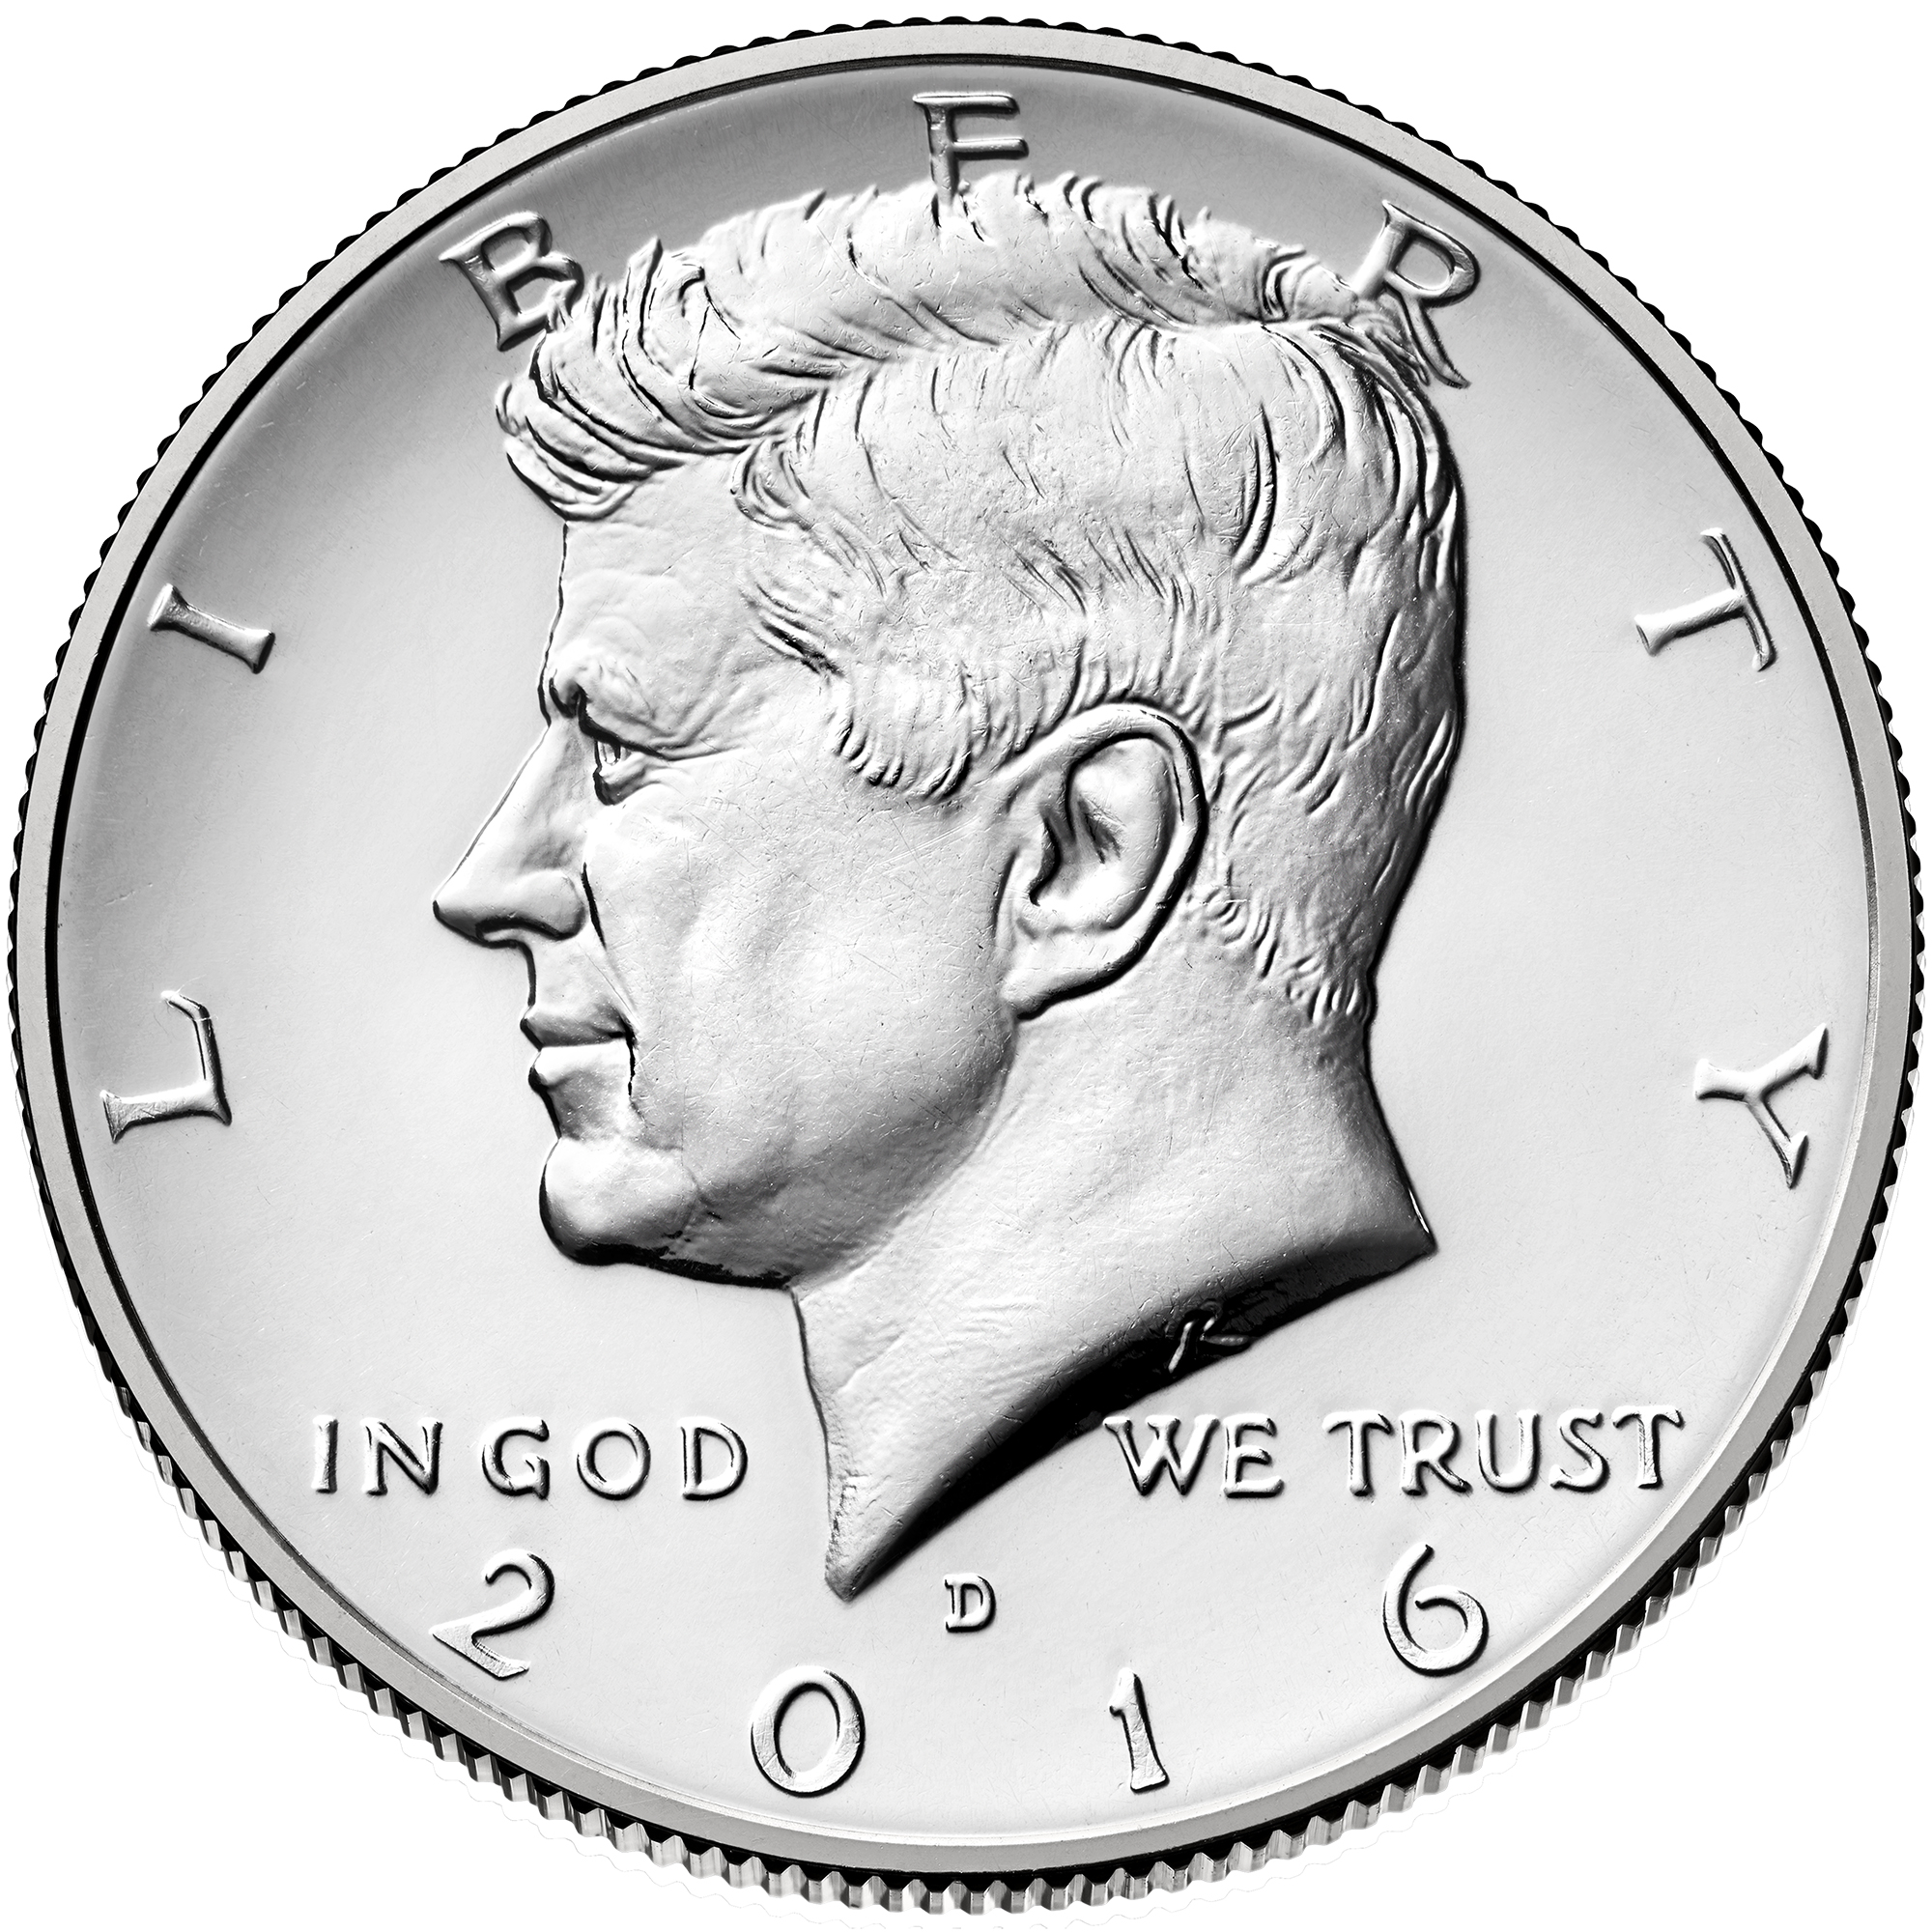 US 1/2 Dollar - Half Dollar 2016 D